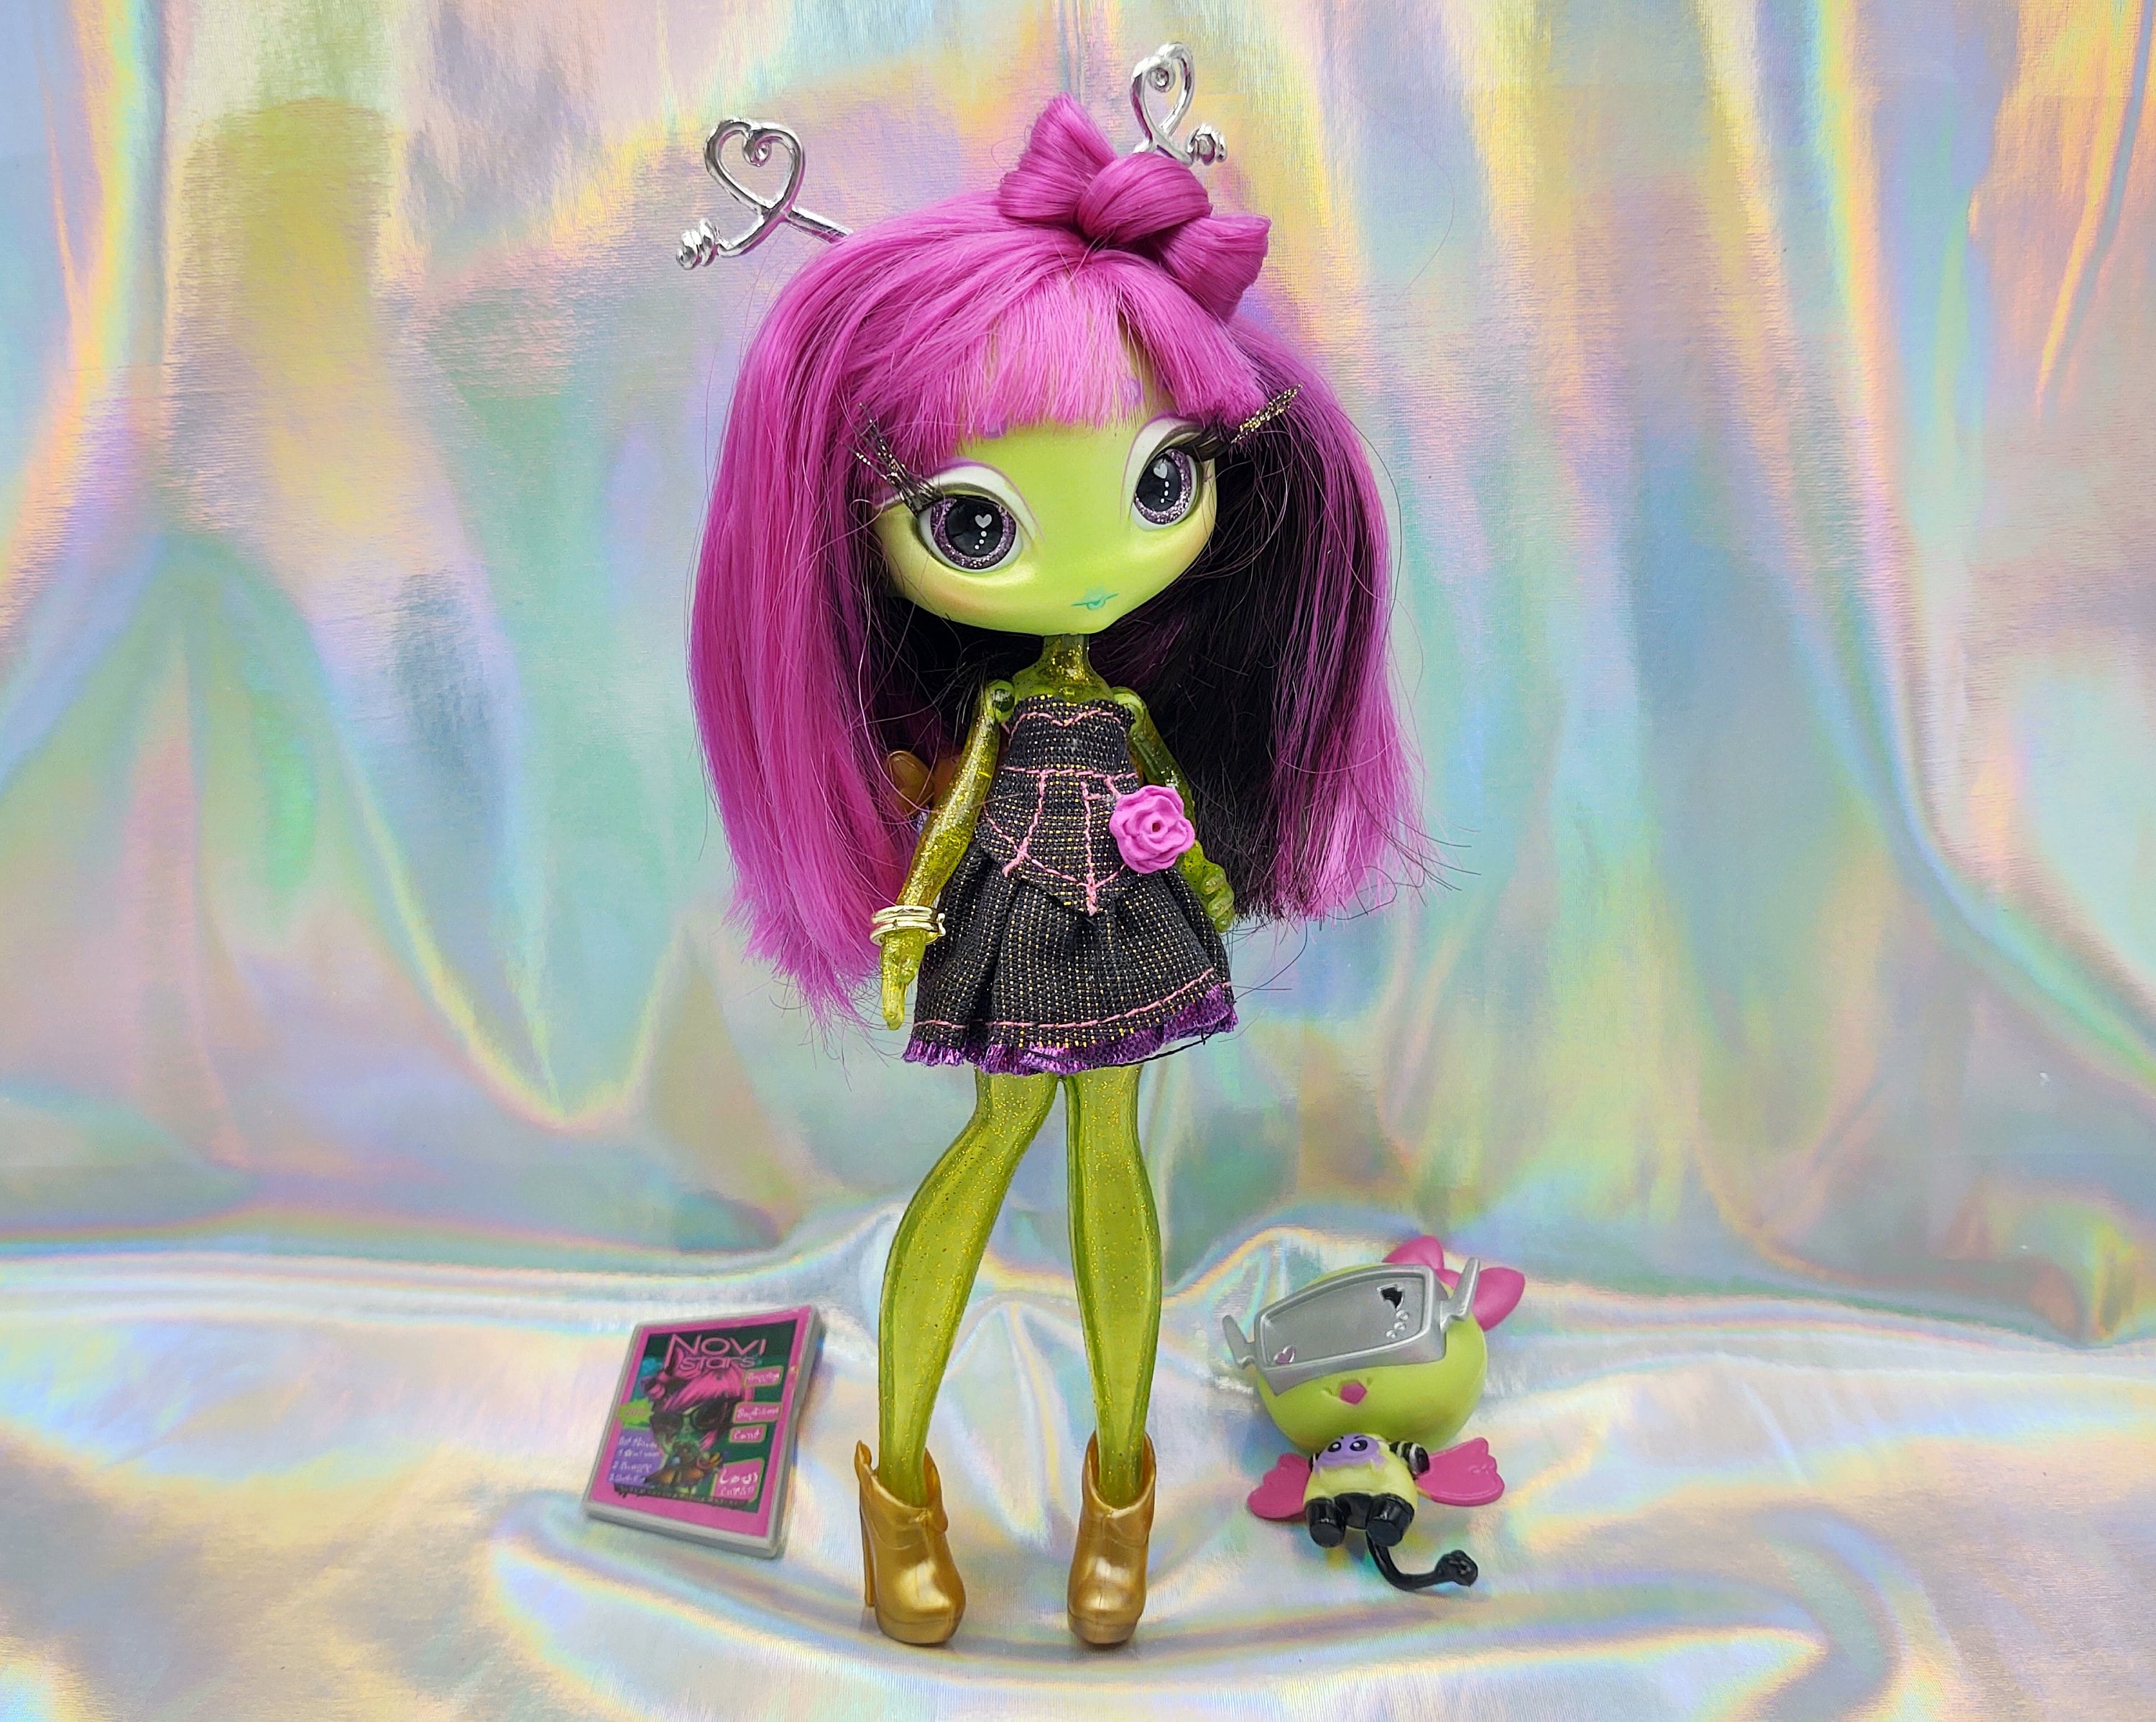 Novi Stars Doll / Retro Alien Fashion Doll / Novi Star Aliens ...